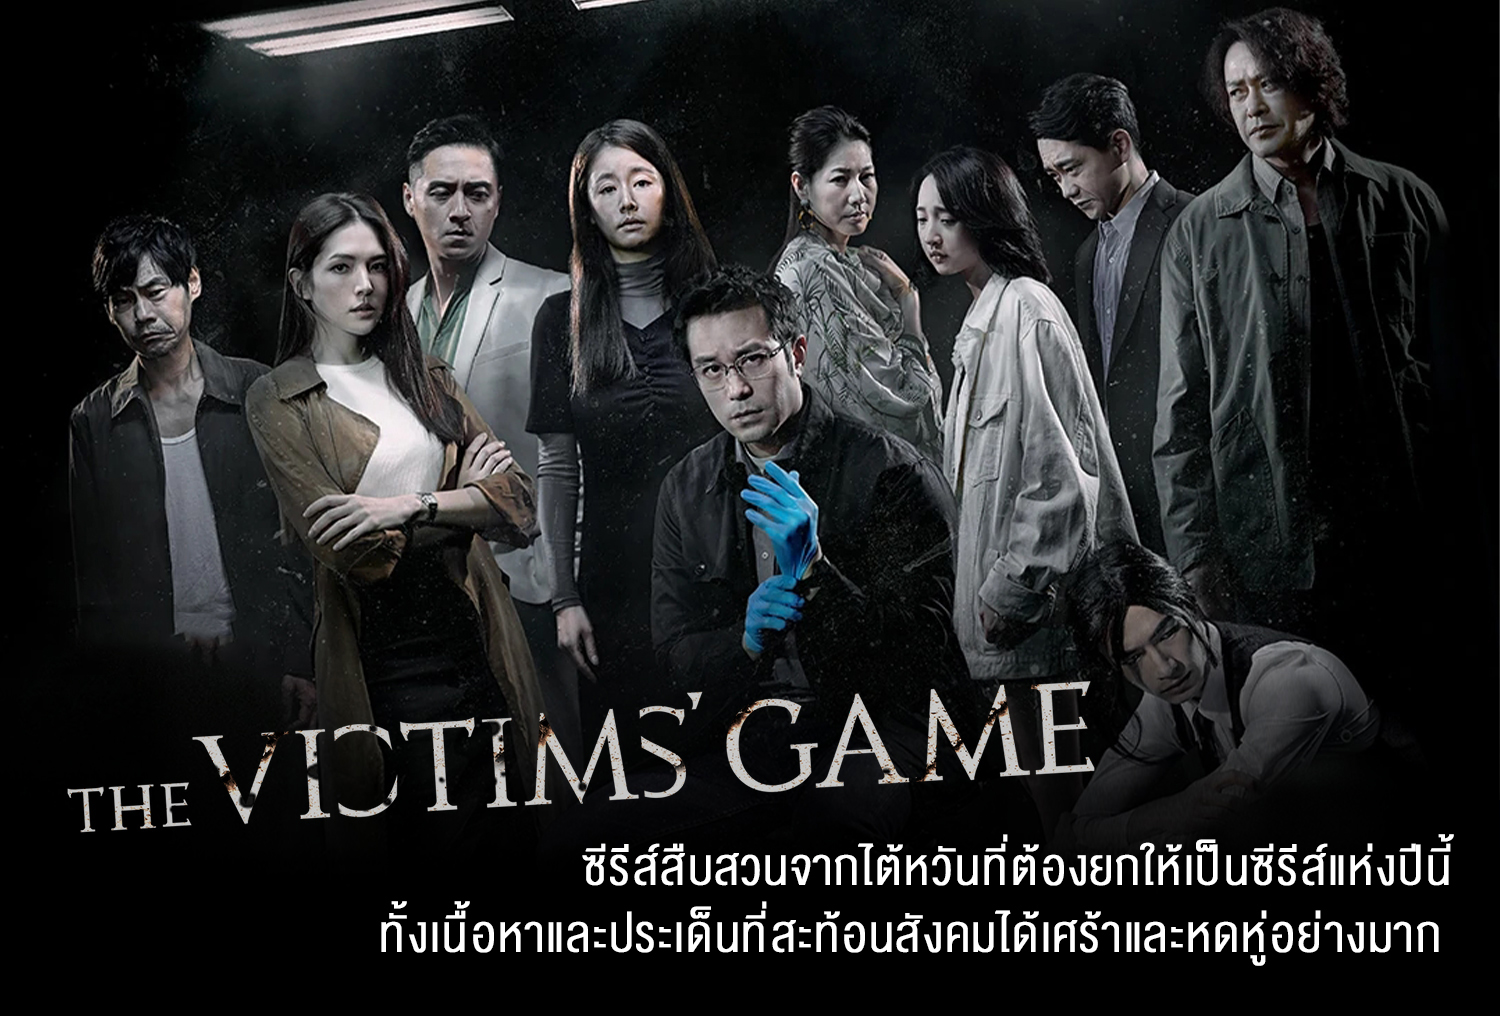 ซีรี่ย์จีน The Victims Game เจาะจิต ปิดเกมล่าเหยื่อ ซับไทย Ep.1-8 (จบ)